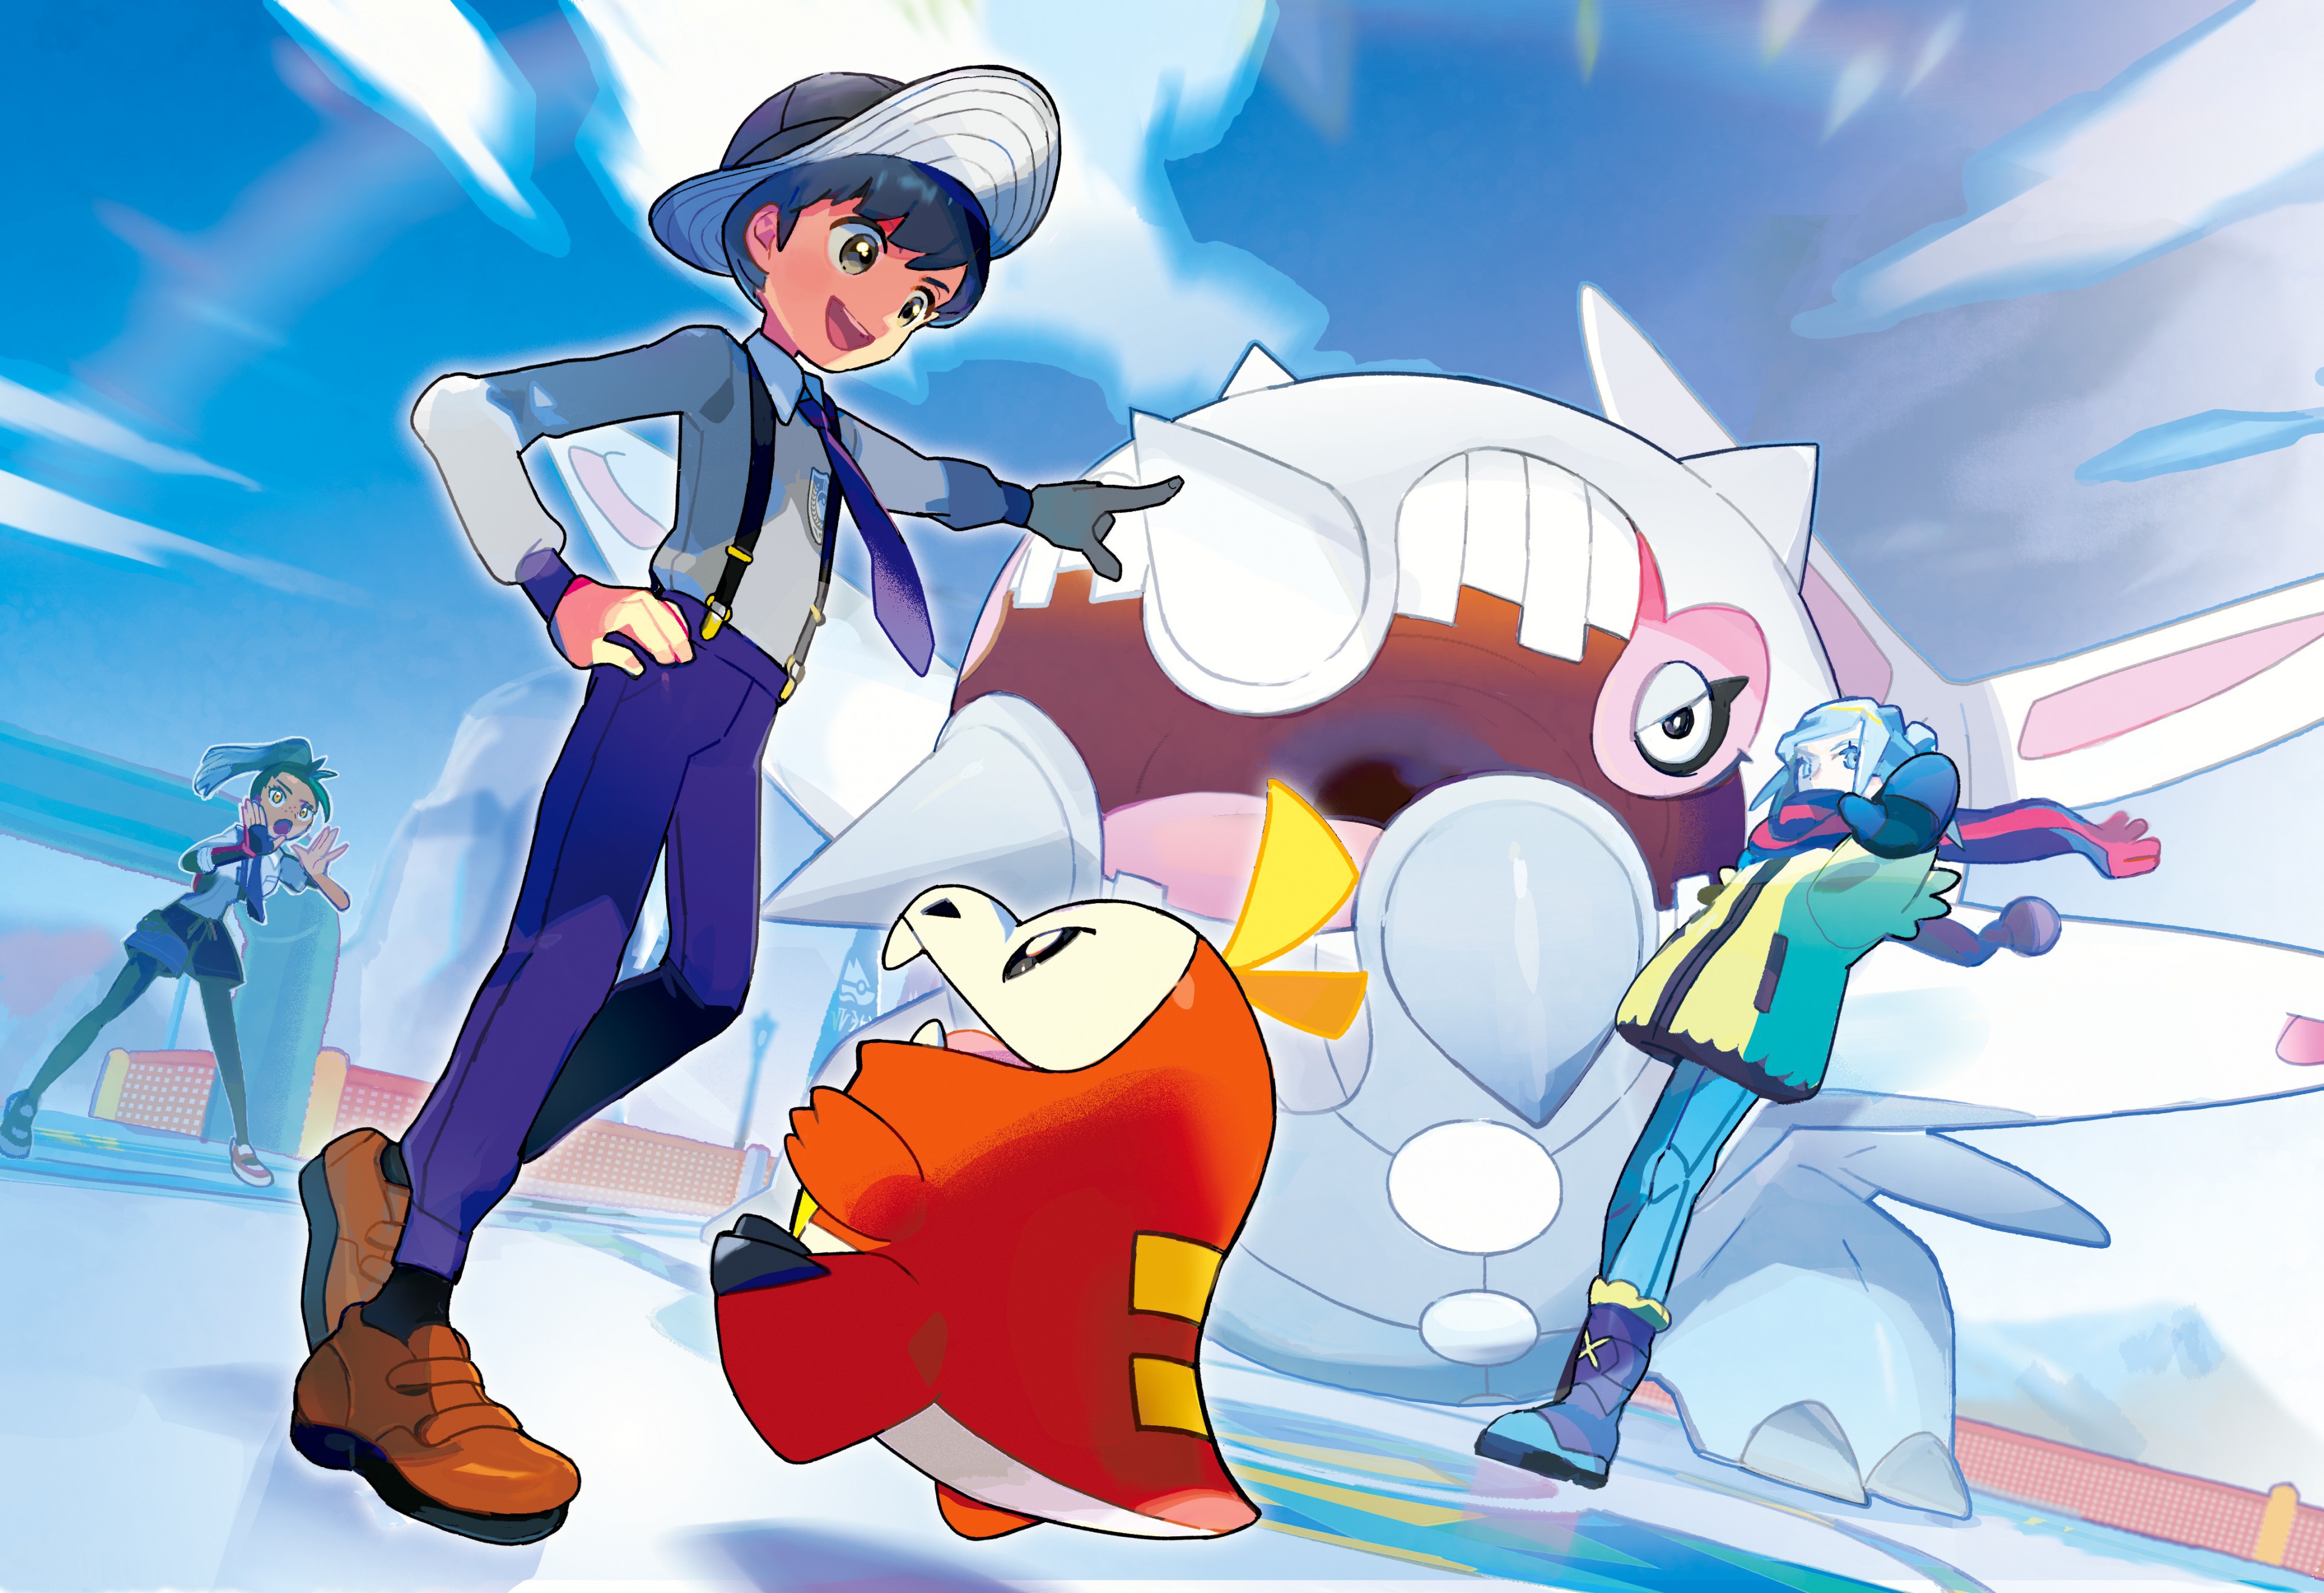 Auf dem Weg zum Paldea-Champion stellen sich viele harte Widersacher entgegen, wie beispielsweise der Eis-Arenaleiter Grusha. Quelle: The Pokémon Company / Game Freak